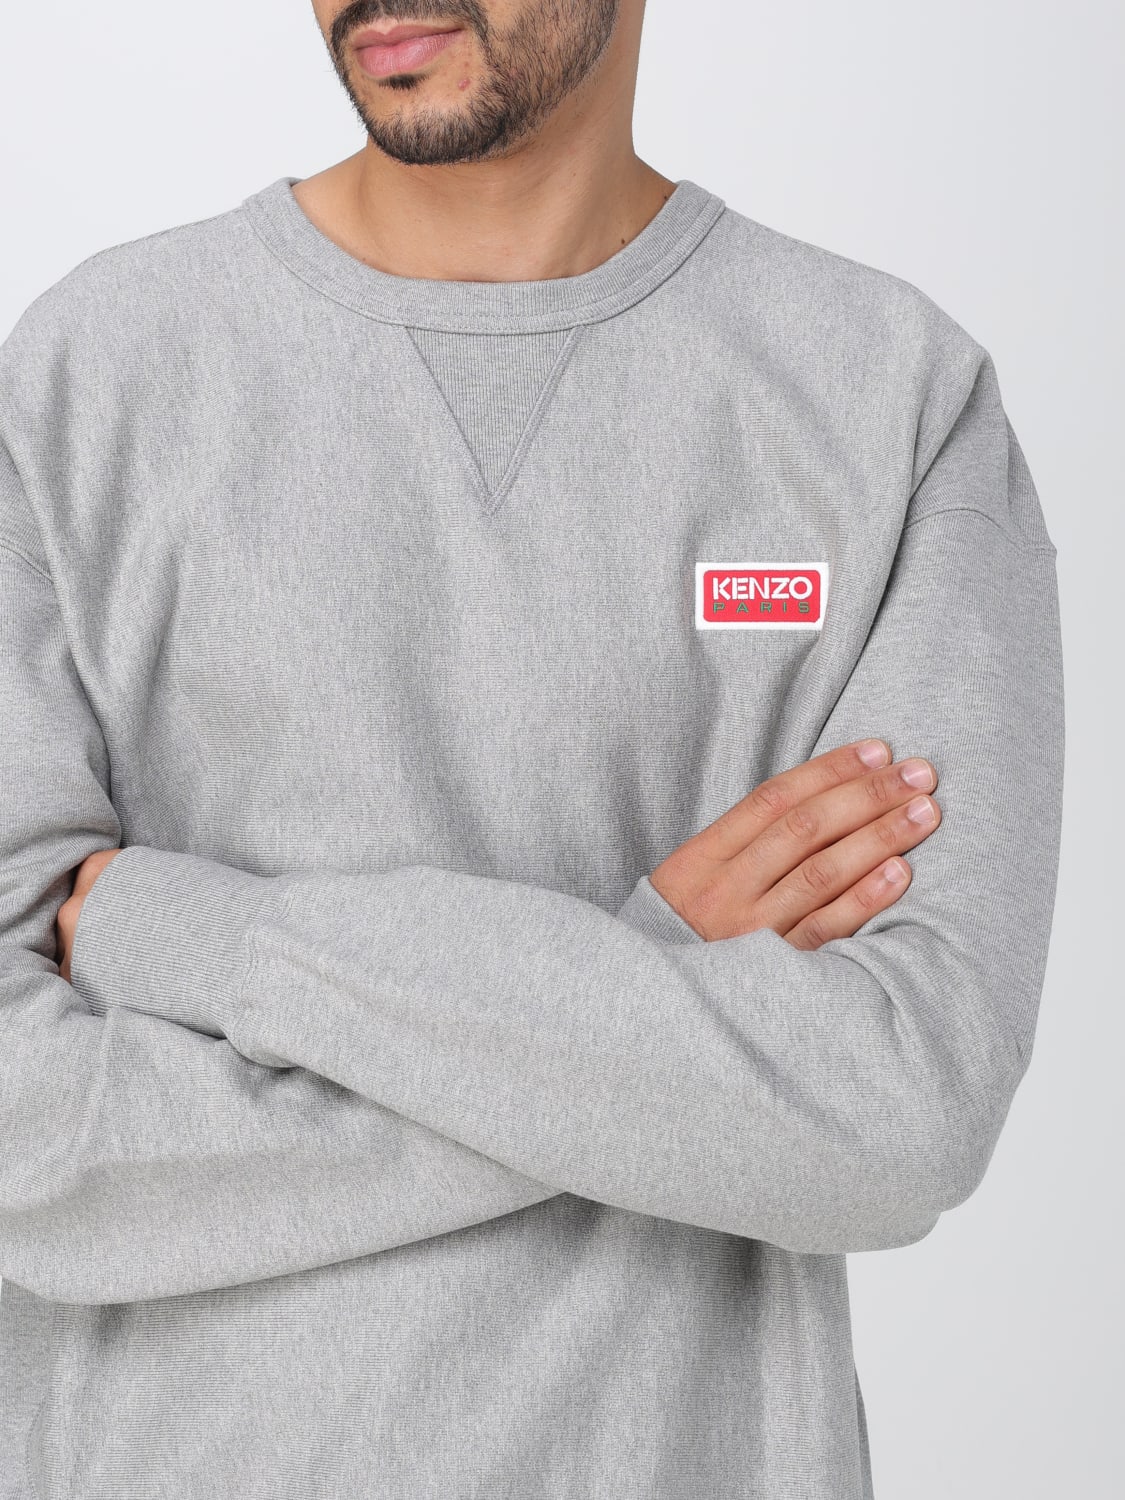 KENZO: cotton sweatshirt with logo - Grey | Kenzo sweatshirt